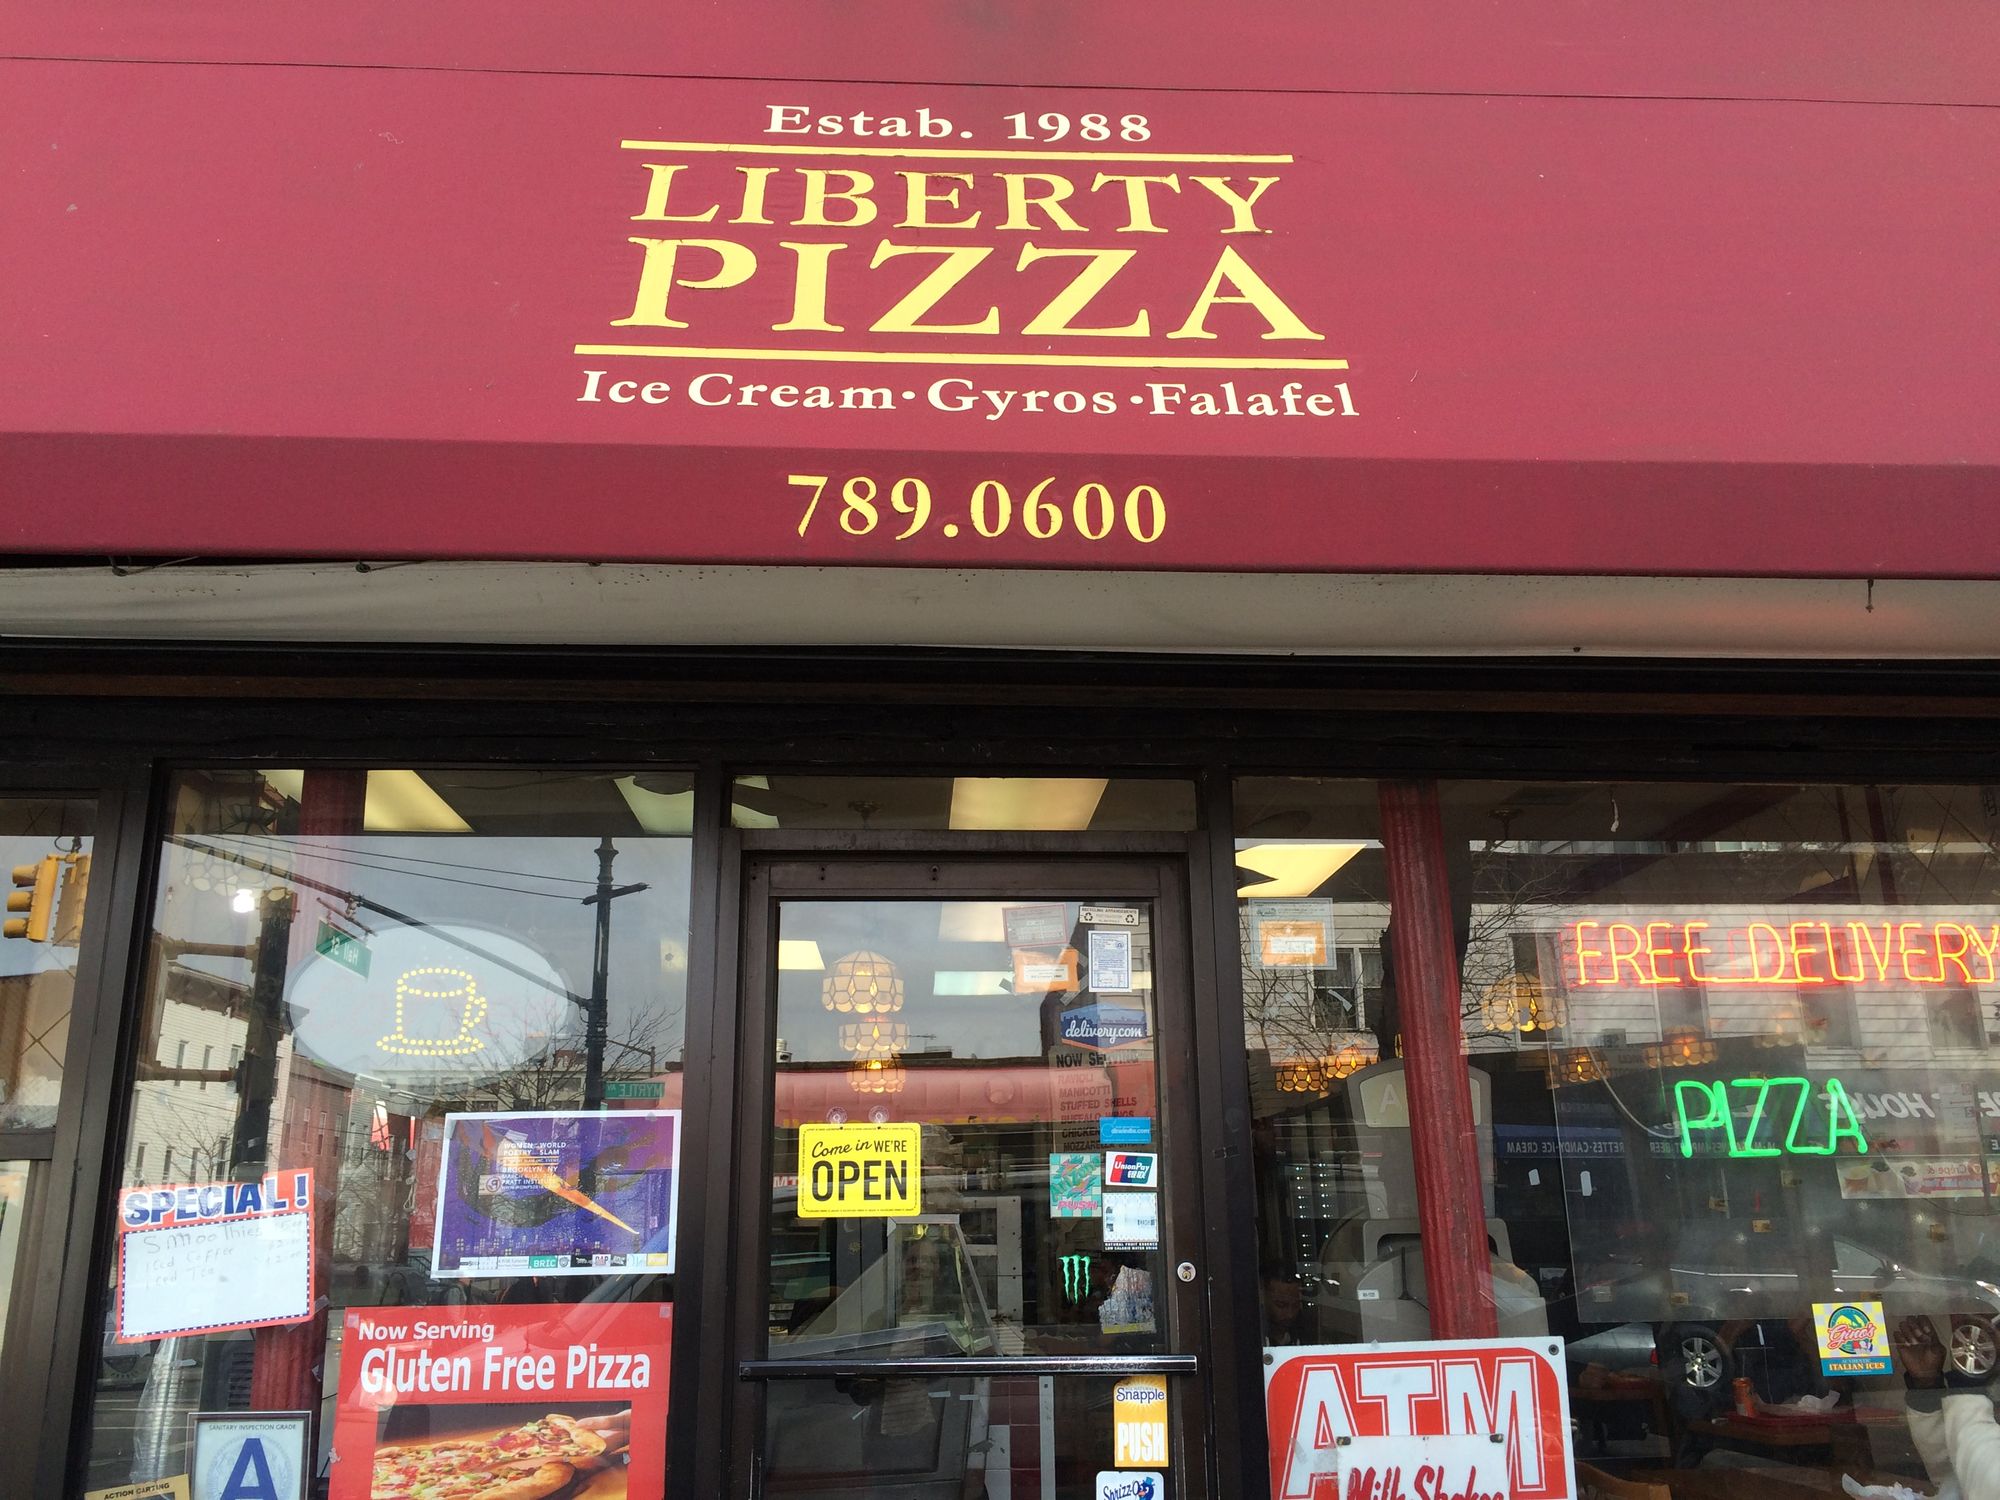 Come In We'Re Open_Liberty Pizza_Plaza Retention campaign _2016